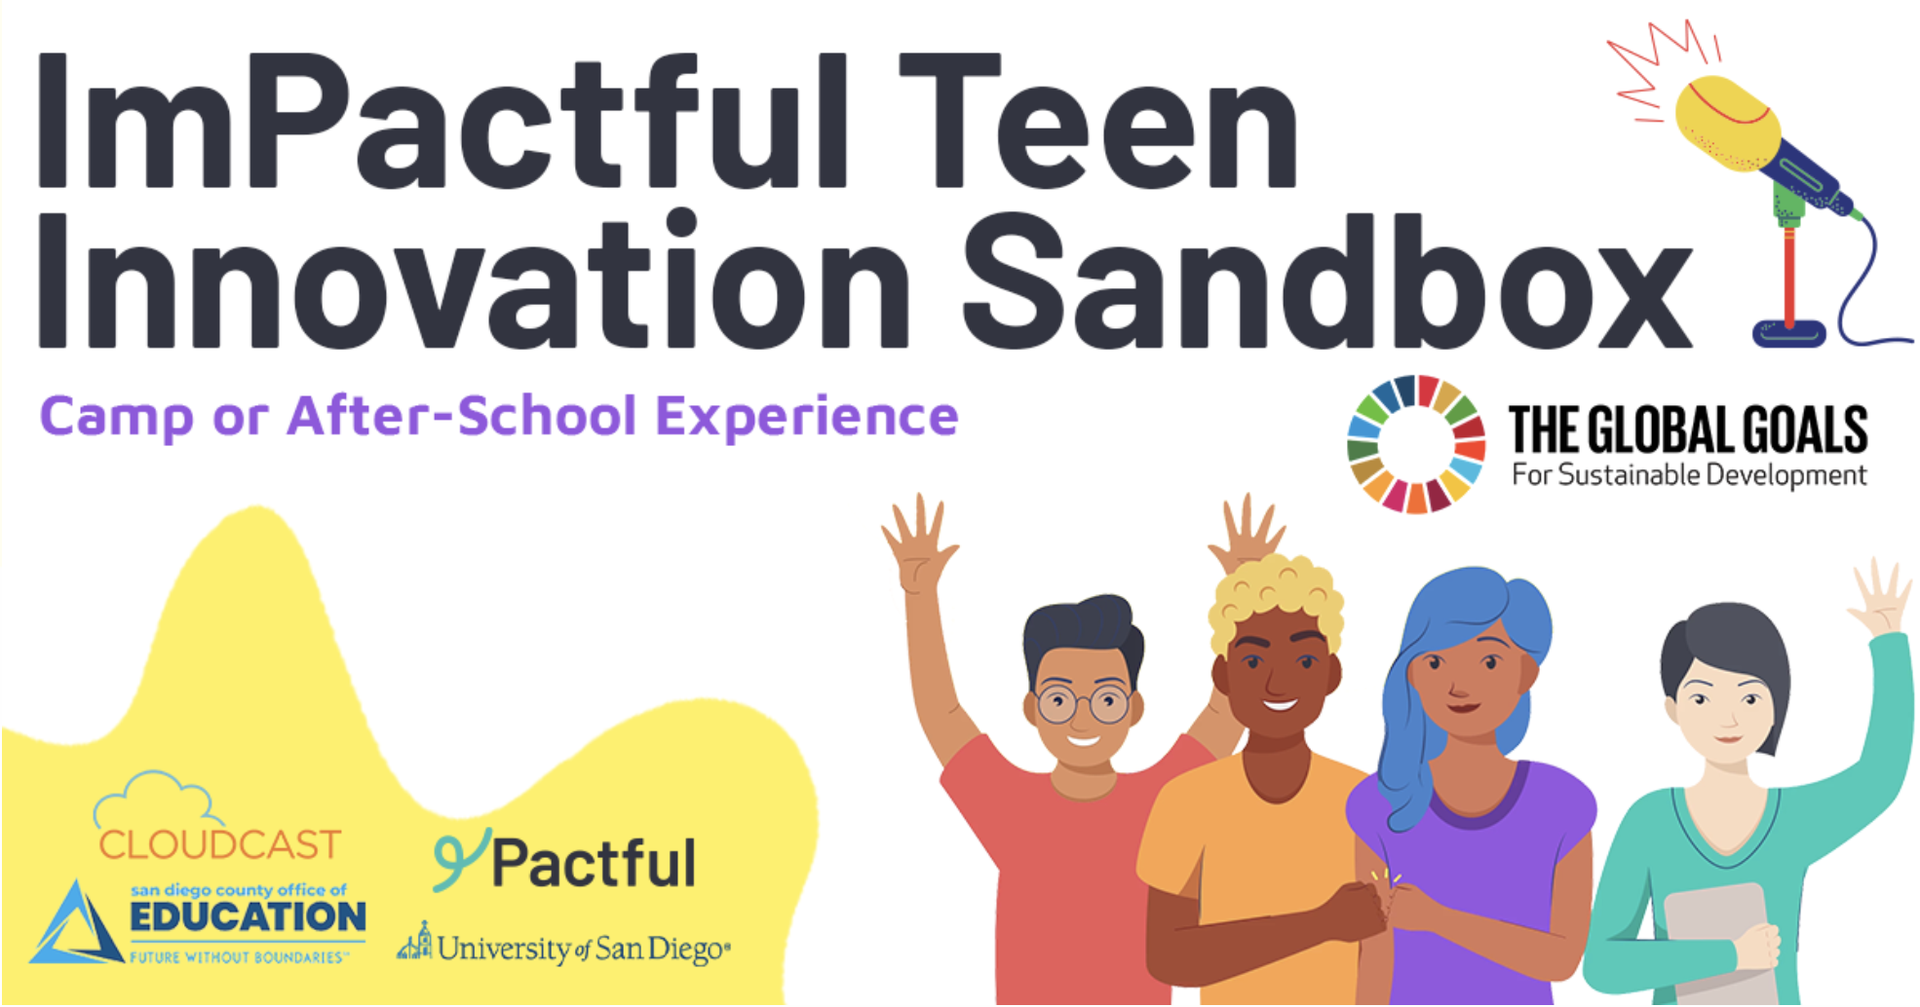 ImPactful Teen Innovation Sandbox